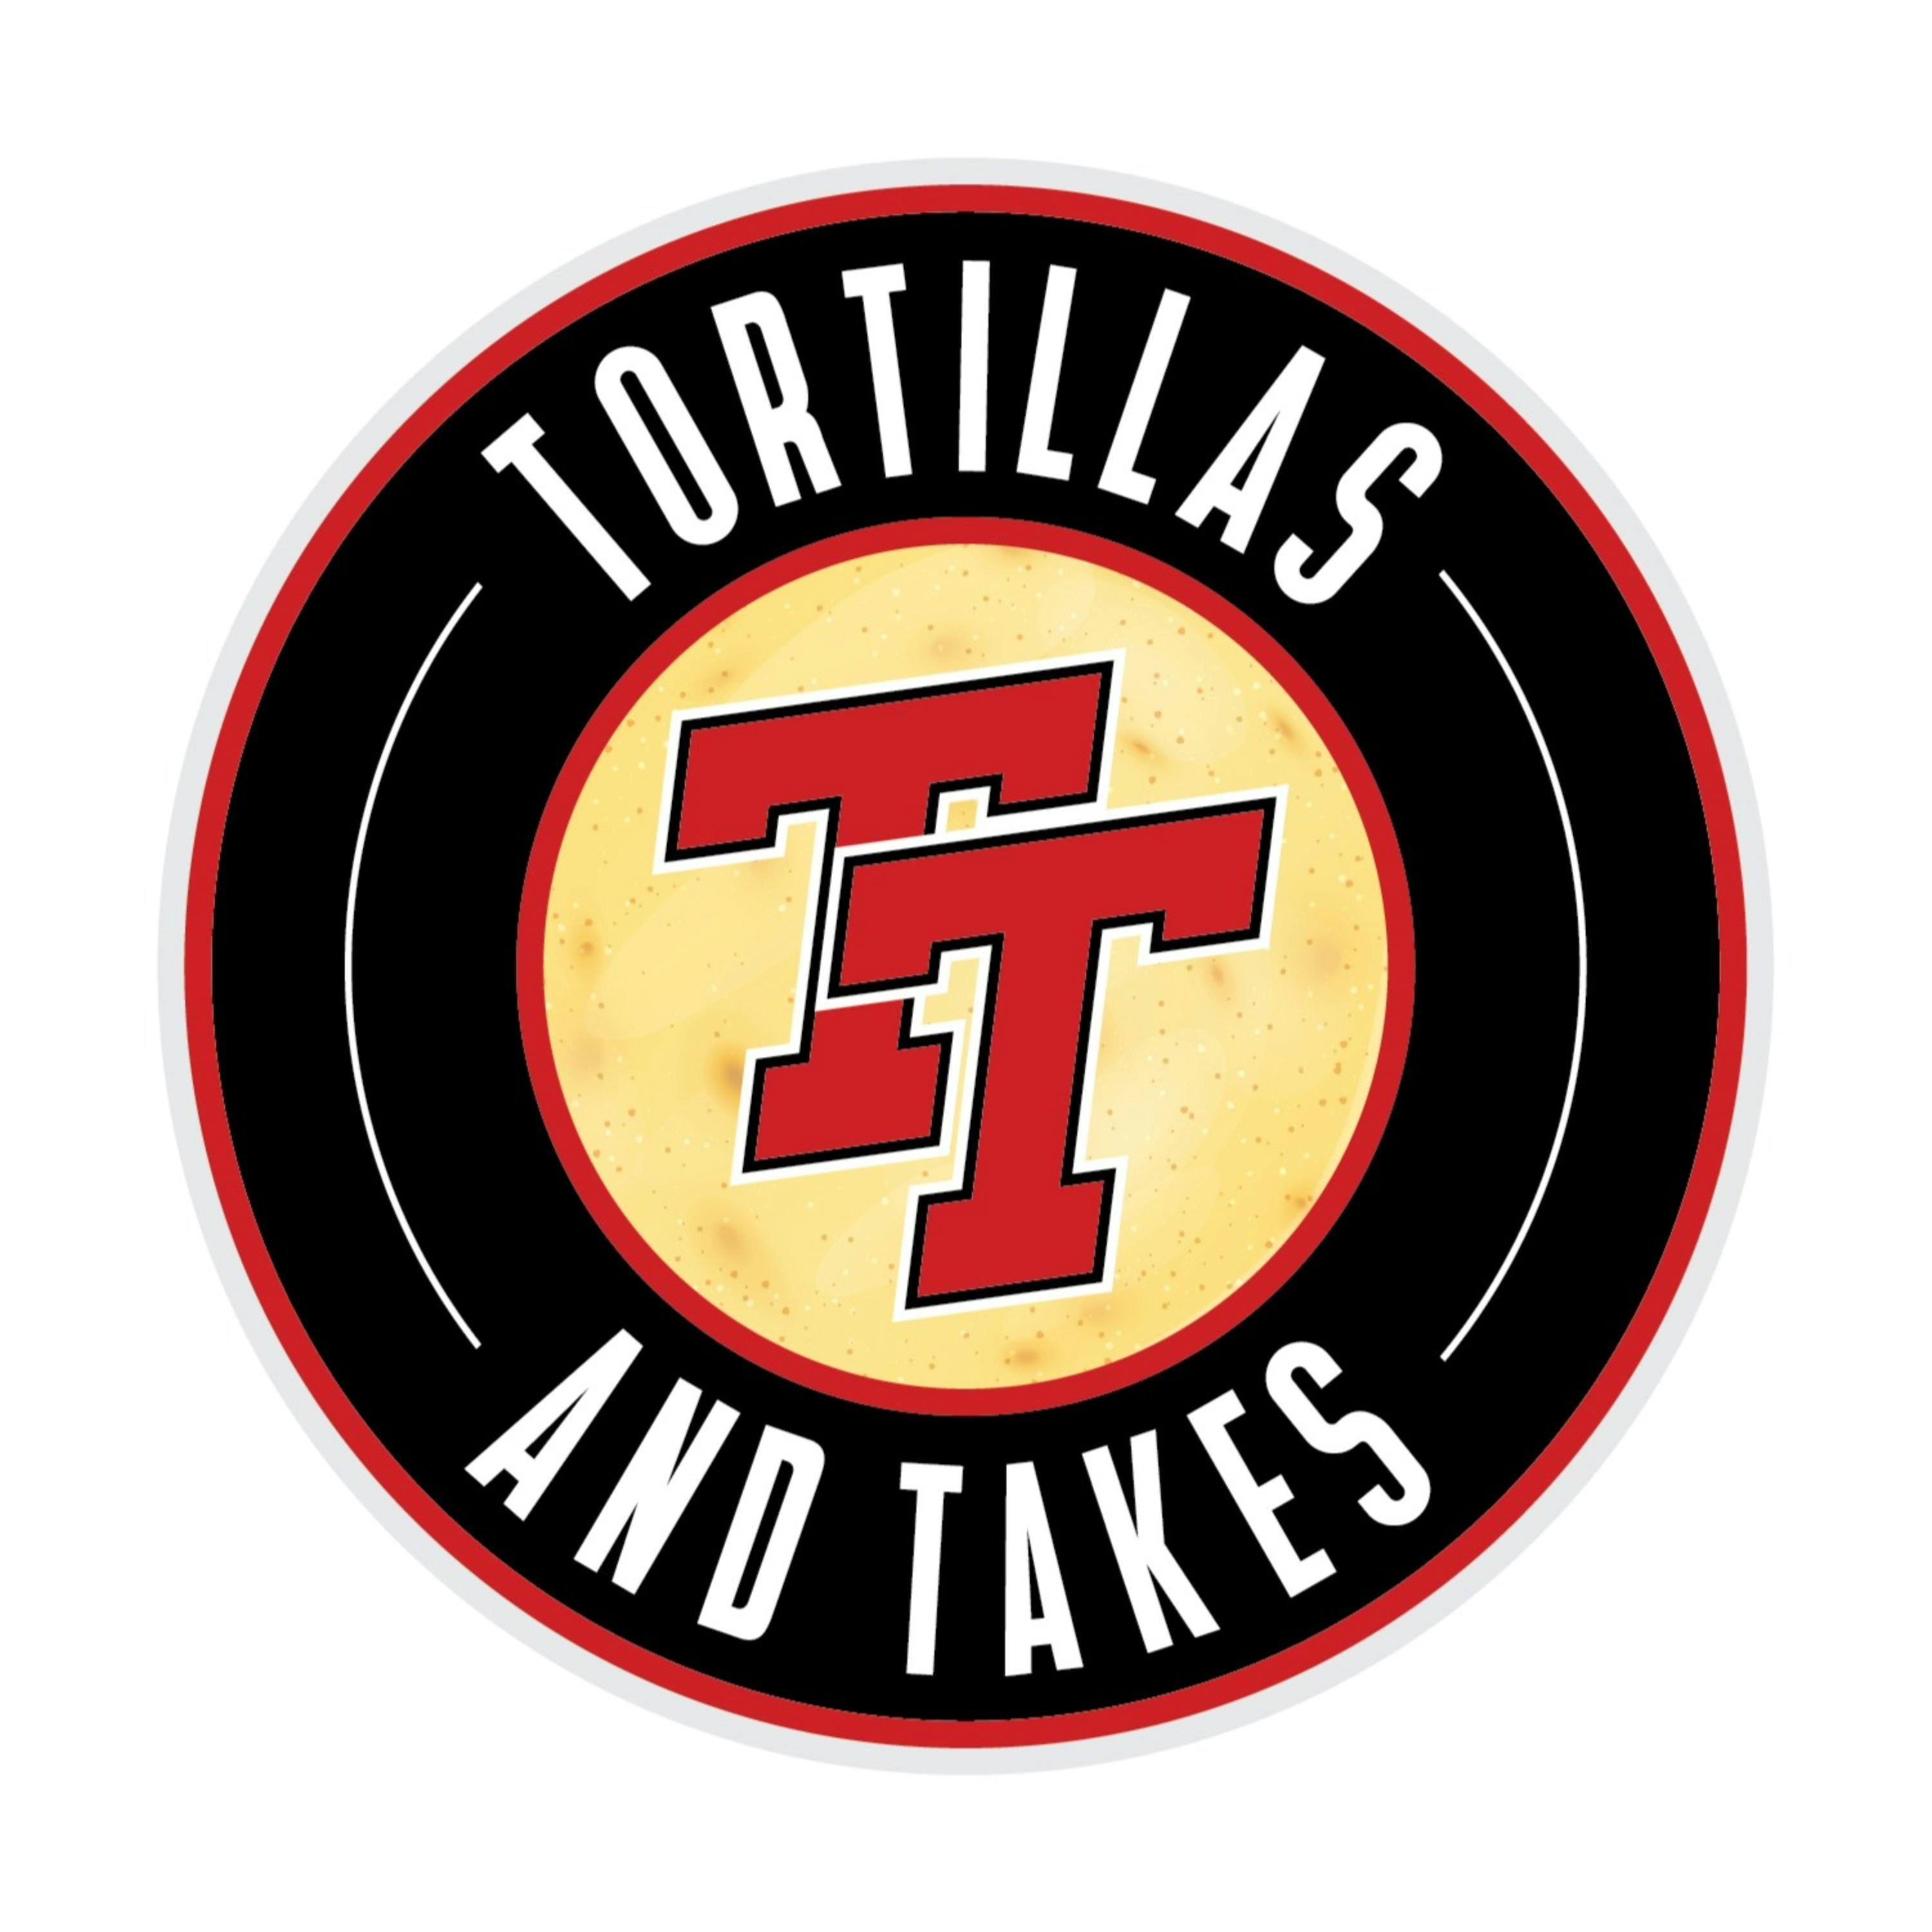 Tortillas & Topics: Wackbat chat & Texas Tech's dark horse campaign